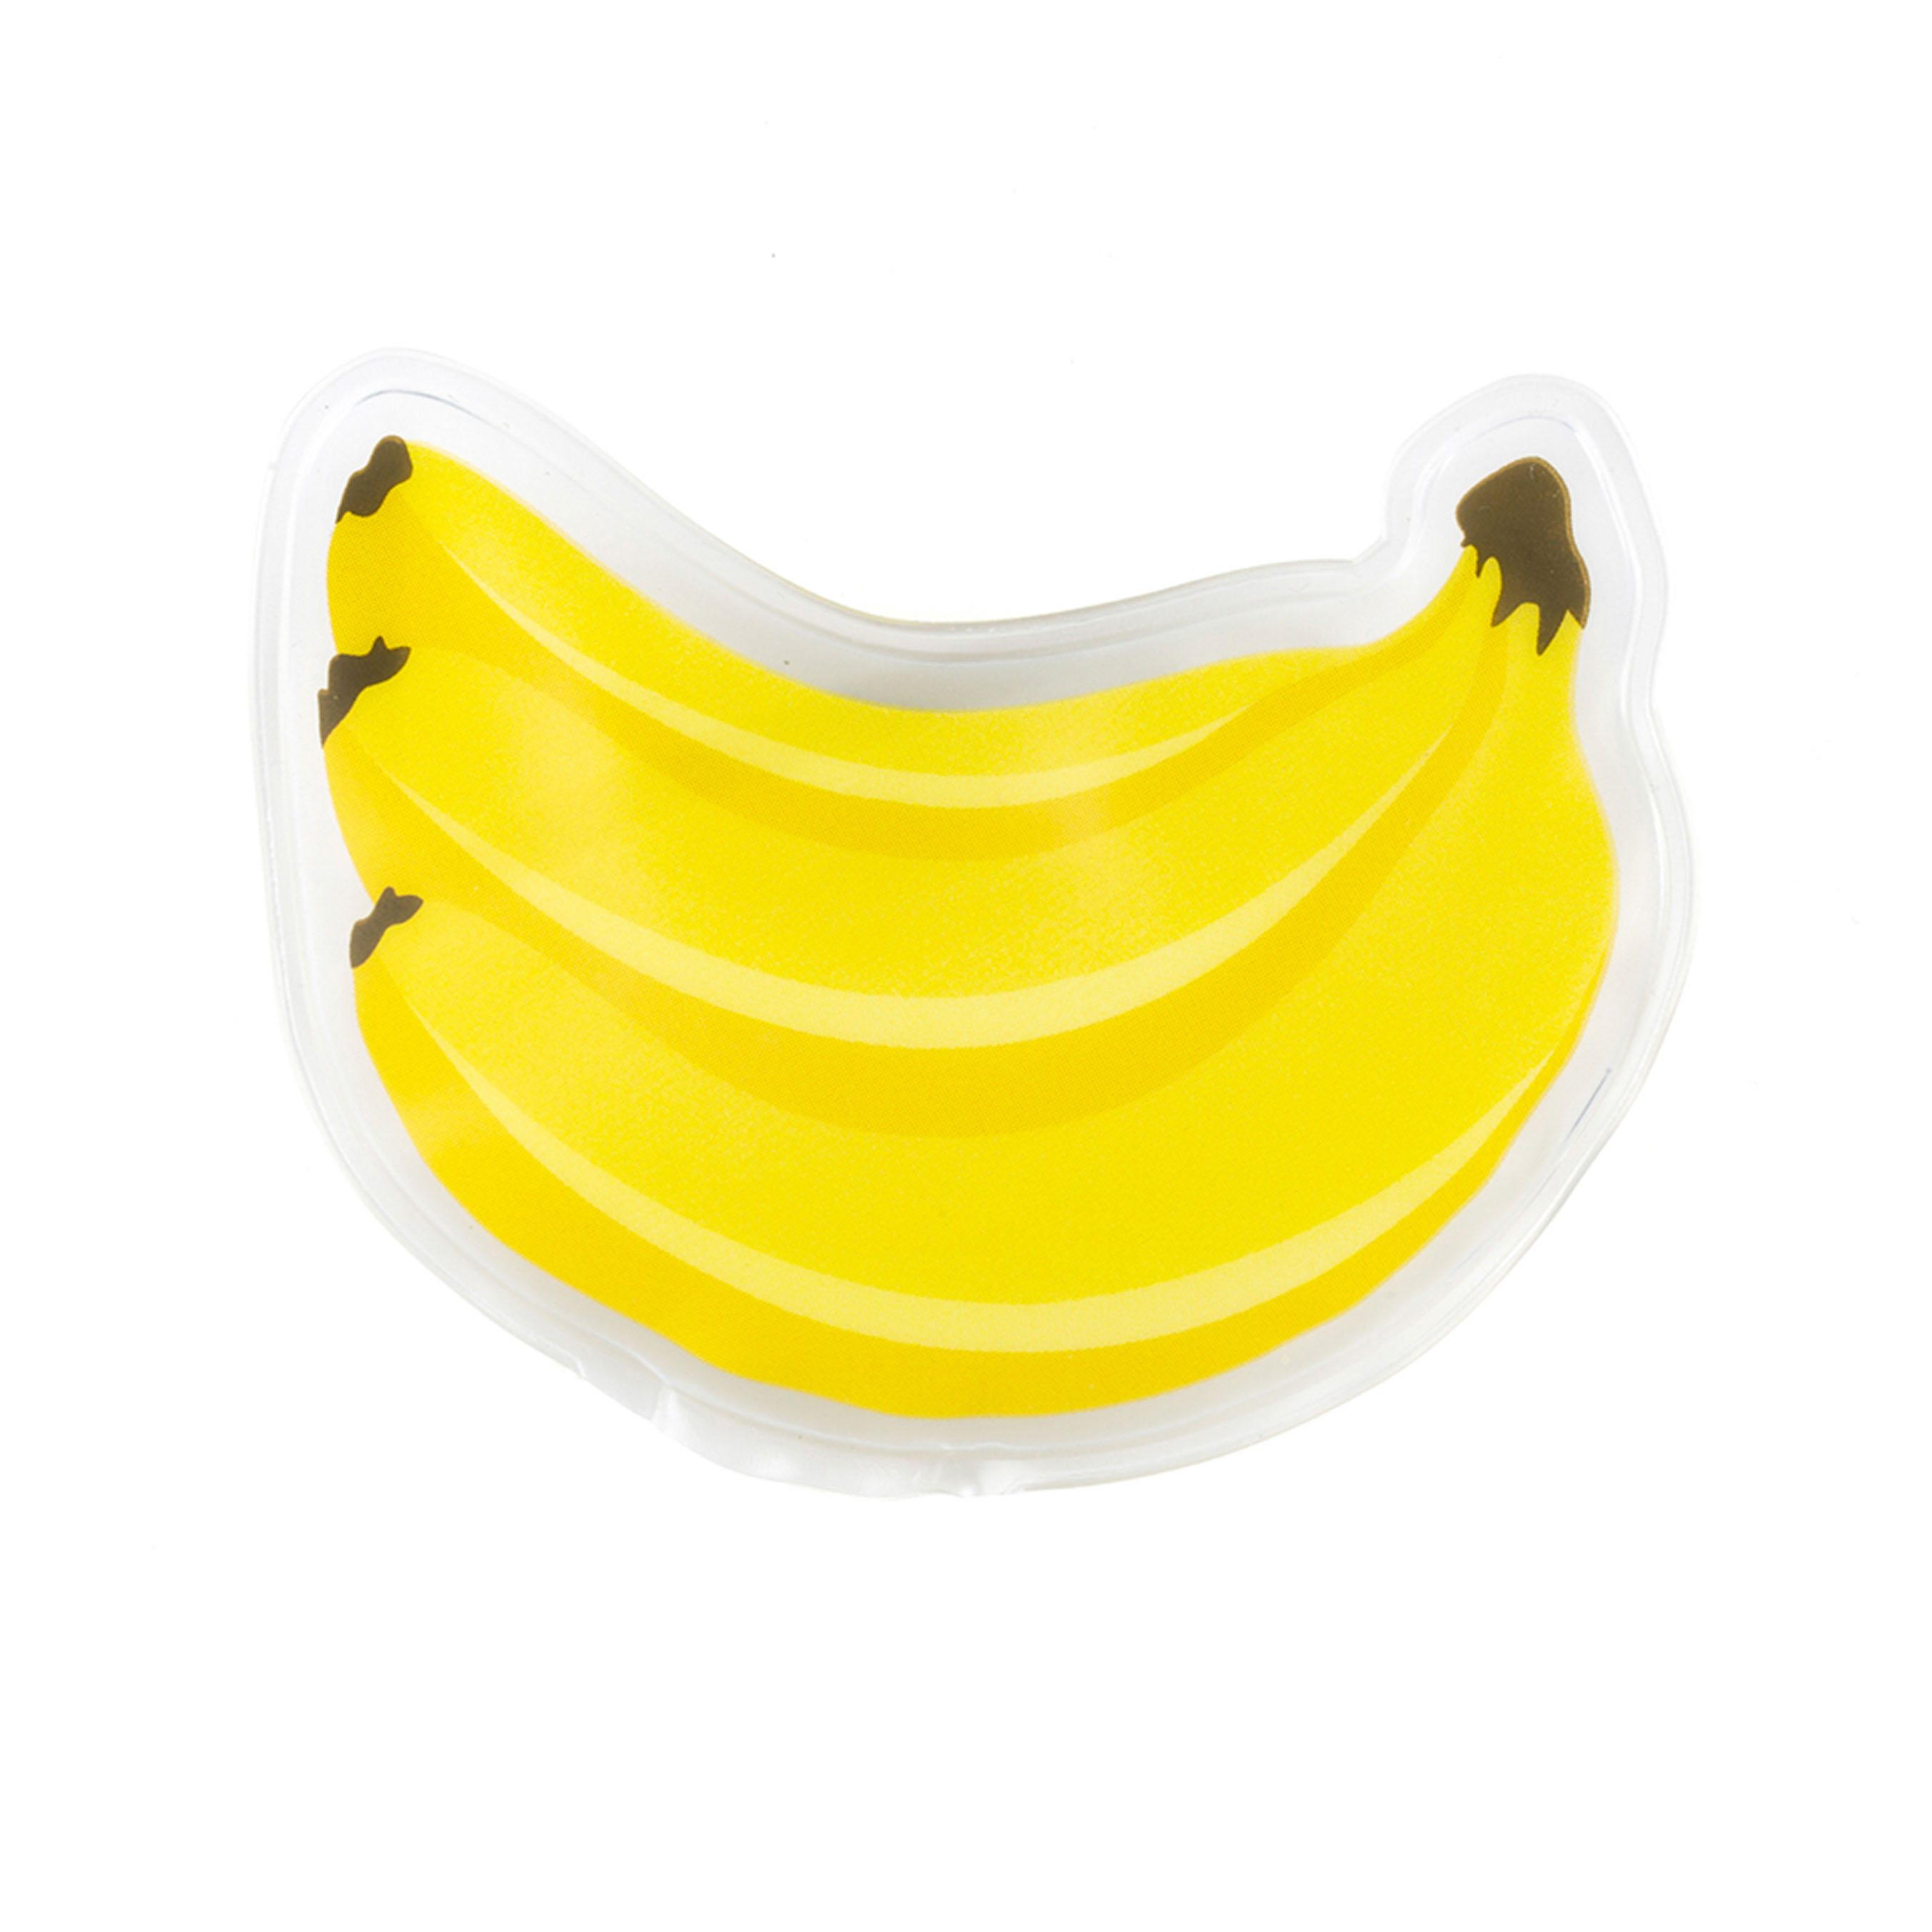 Gel pack caldo/freddo per alimenti - Banana, , large